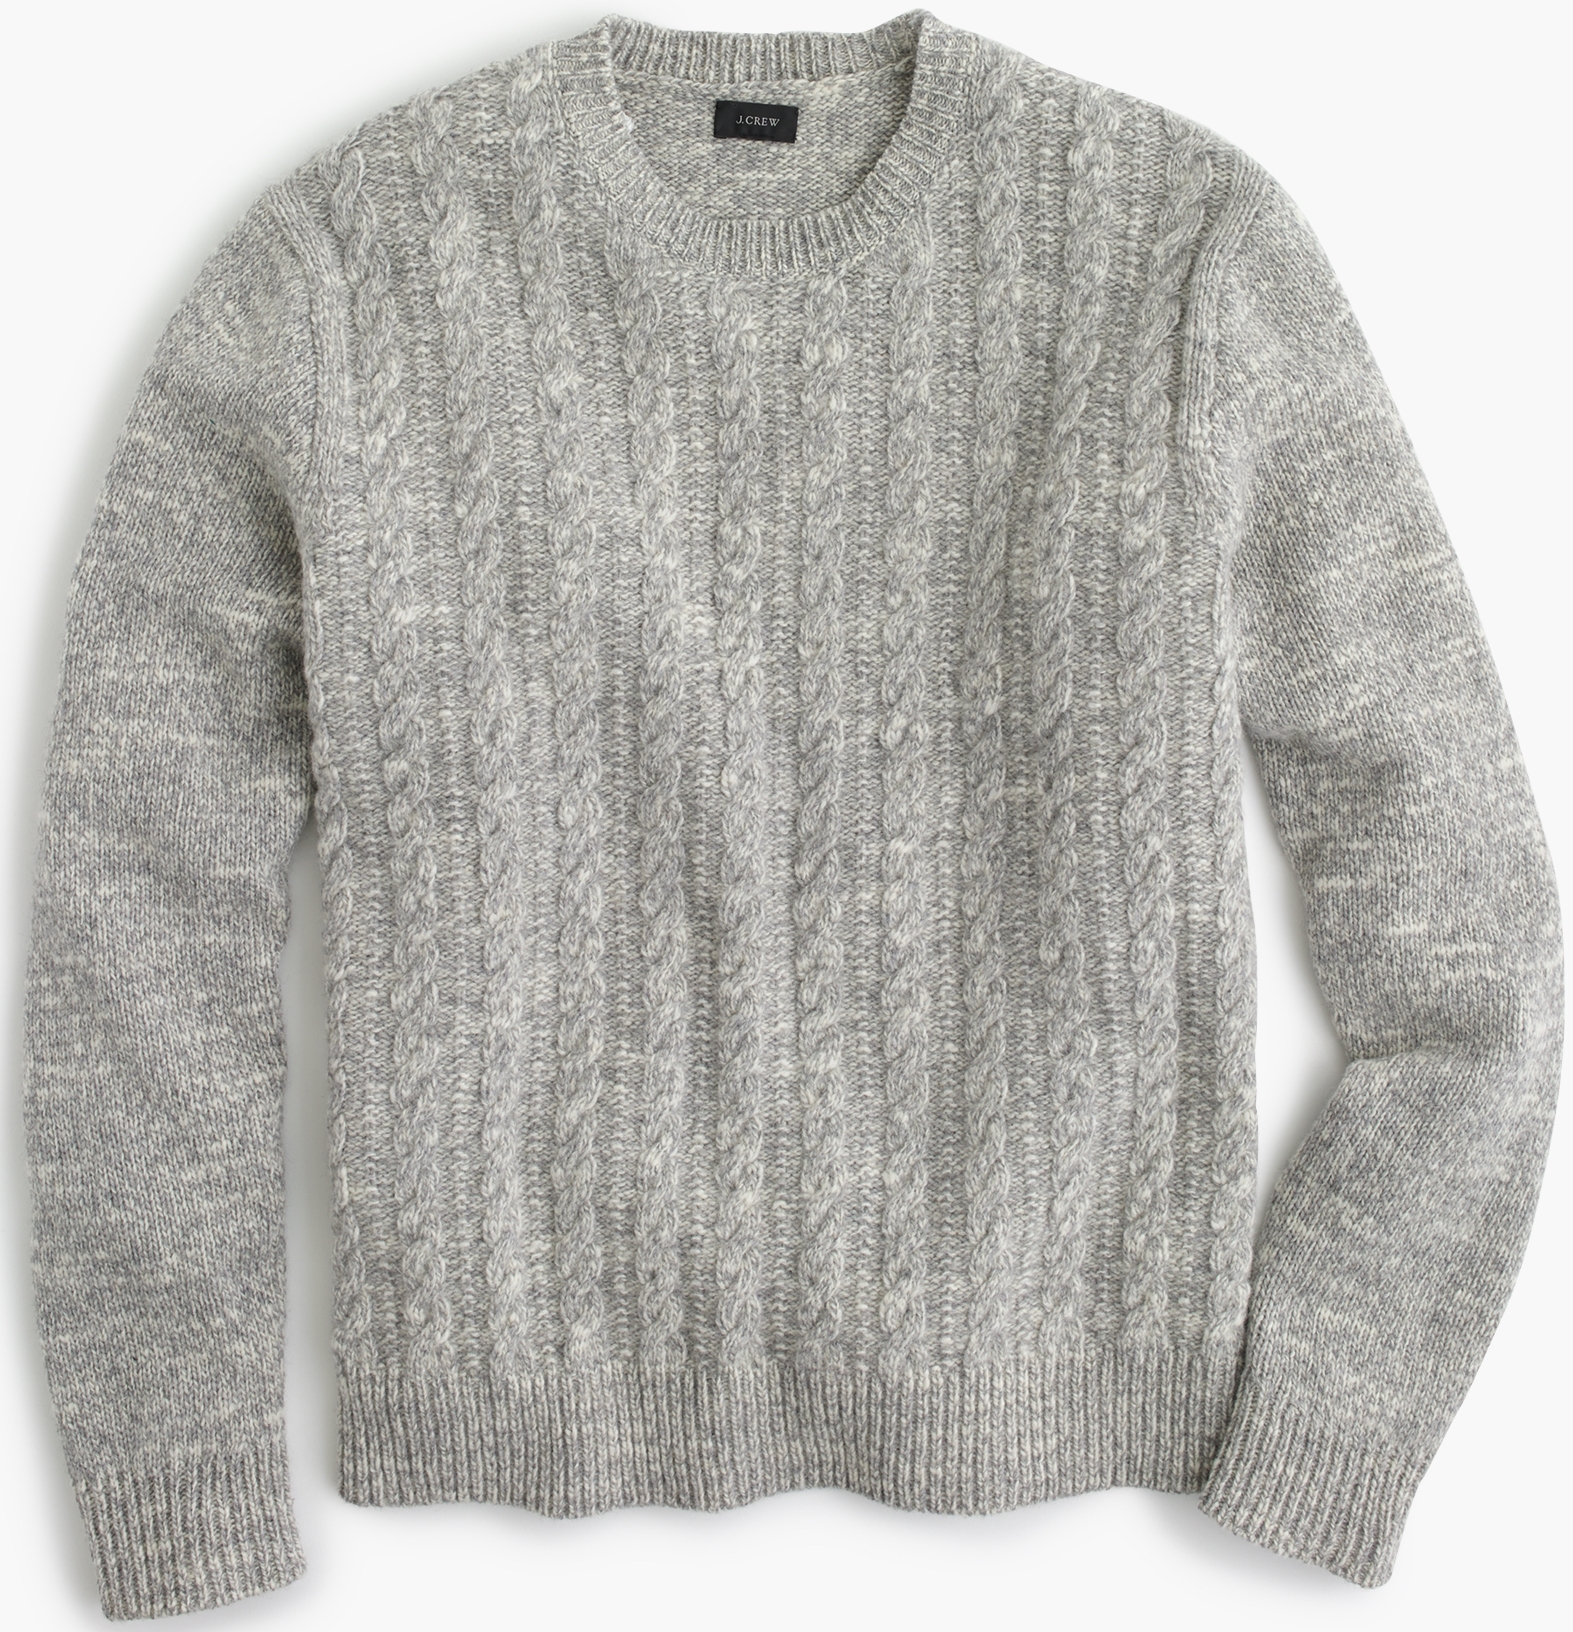 J.Crew Italian Wool Cable Sweater, $128